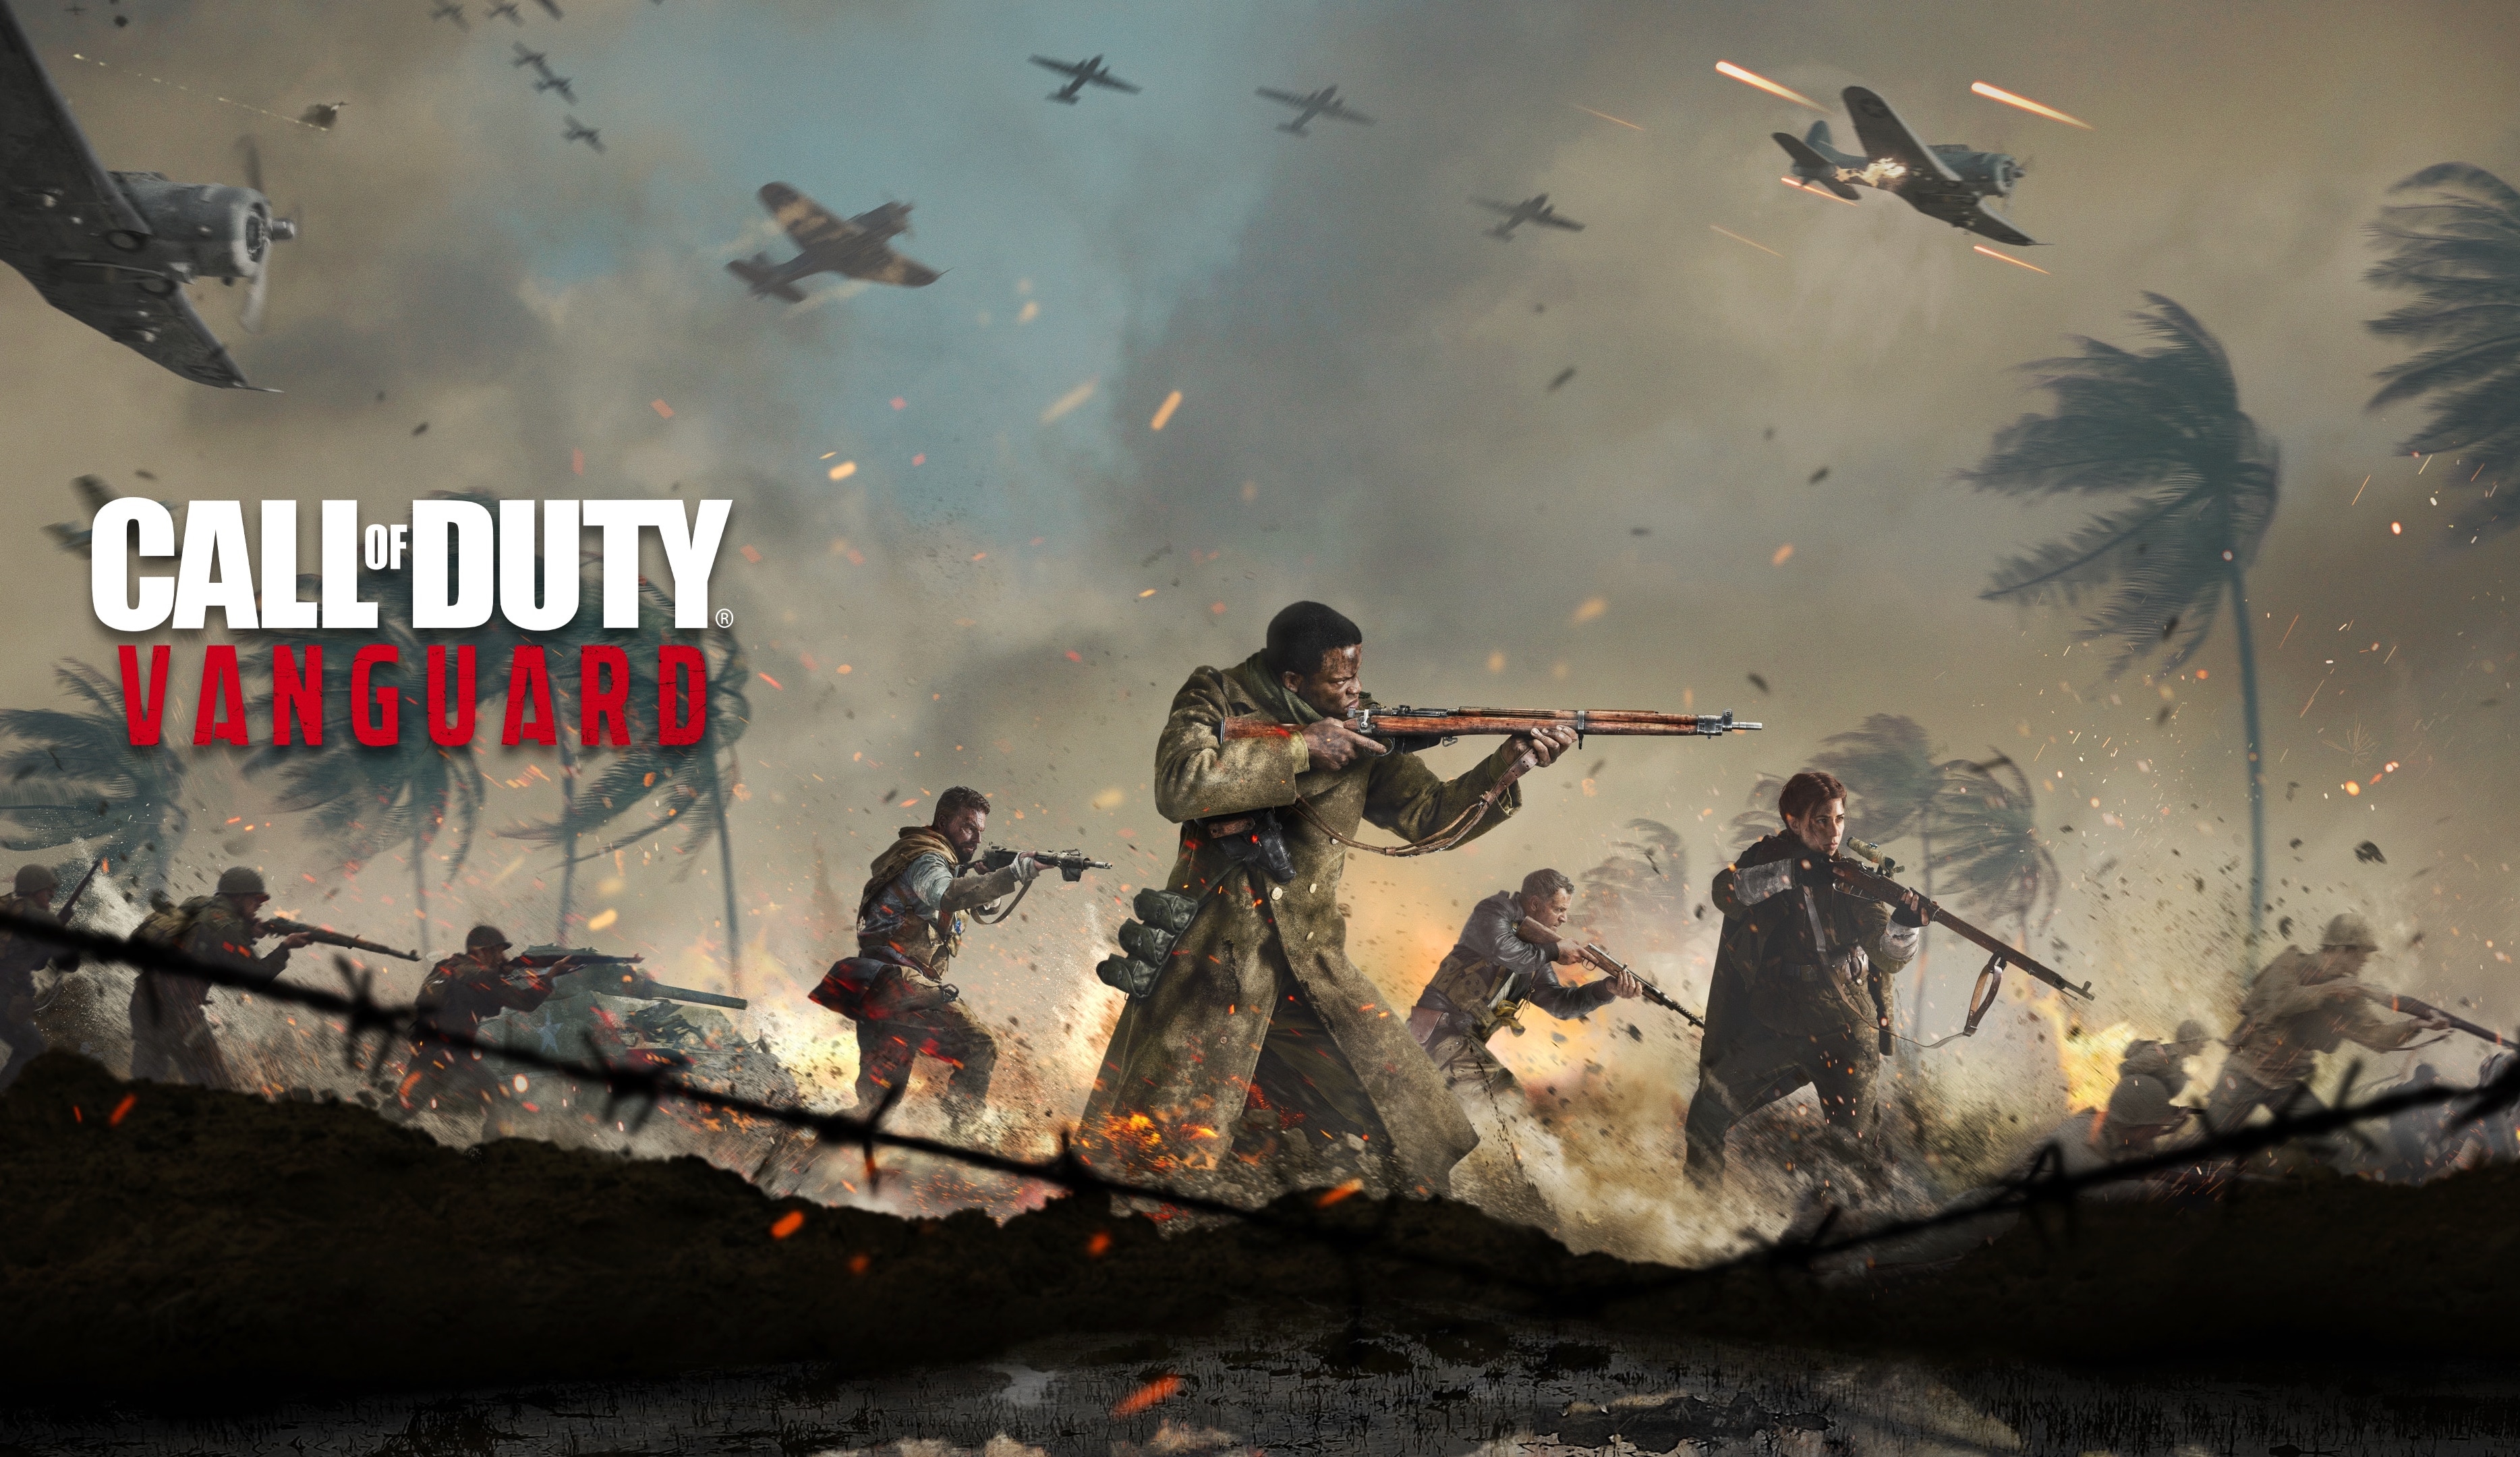 Juego PS5: Call of Duty: Vanguard. Al mejor preciol en Paraguay